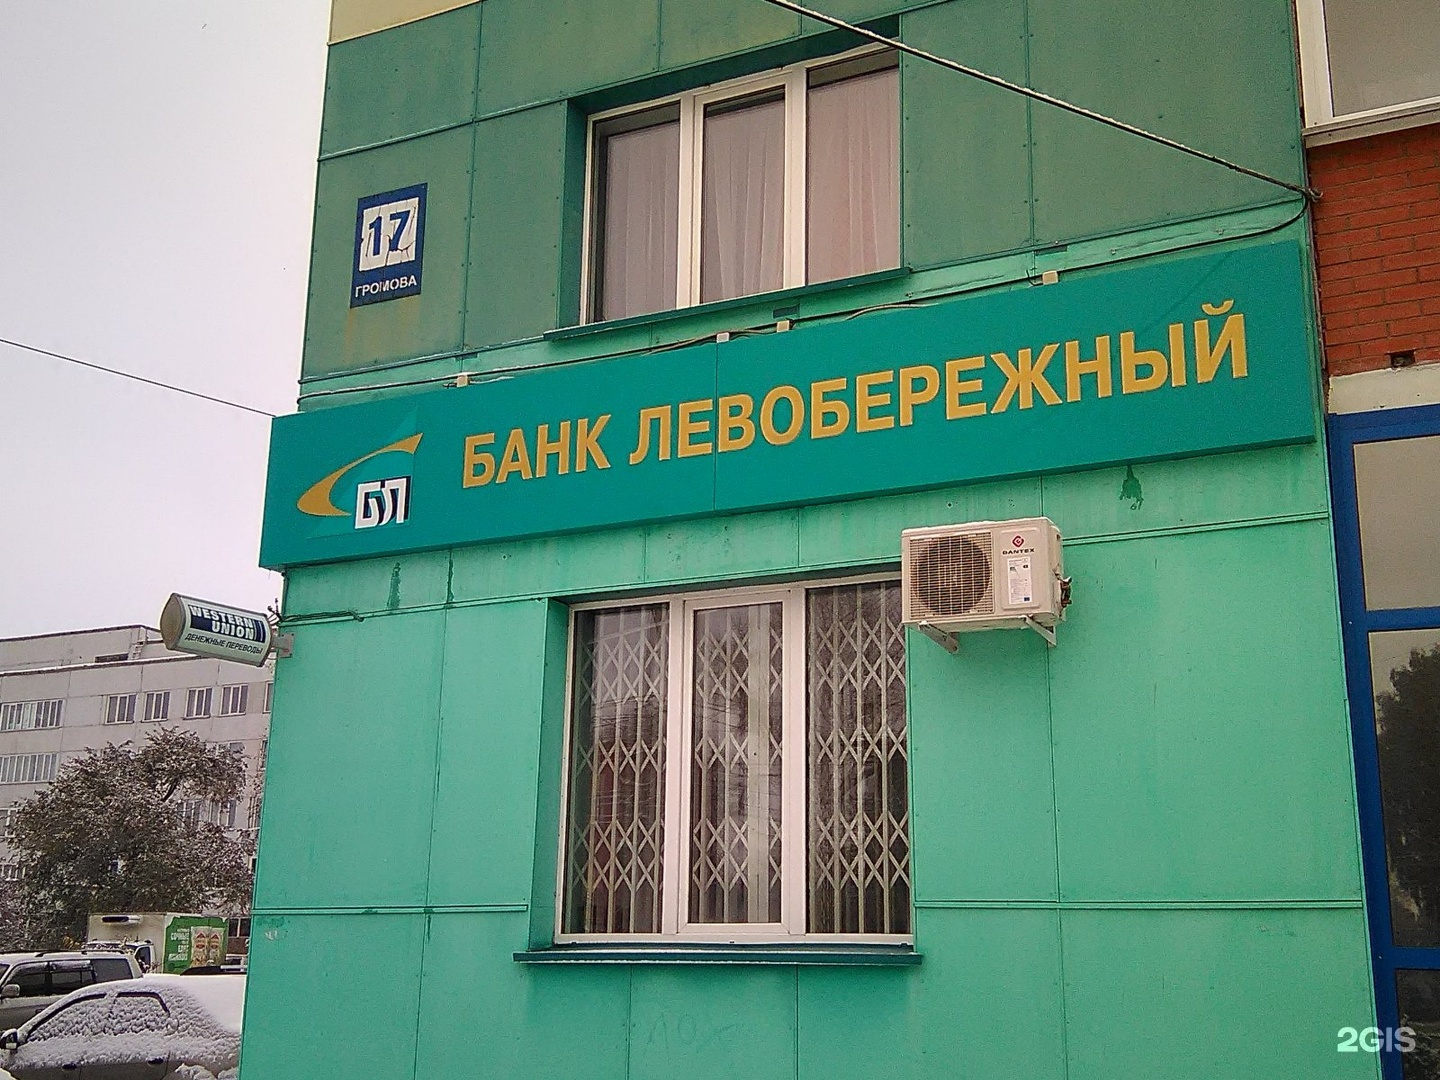 Бик левобережного банка. Банк Левобережный. Банк Левобережный Новосибирск. Громова 22 Новосибирск. Громова 17 Новосибирск.